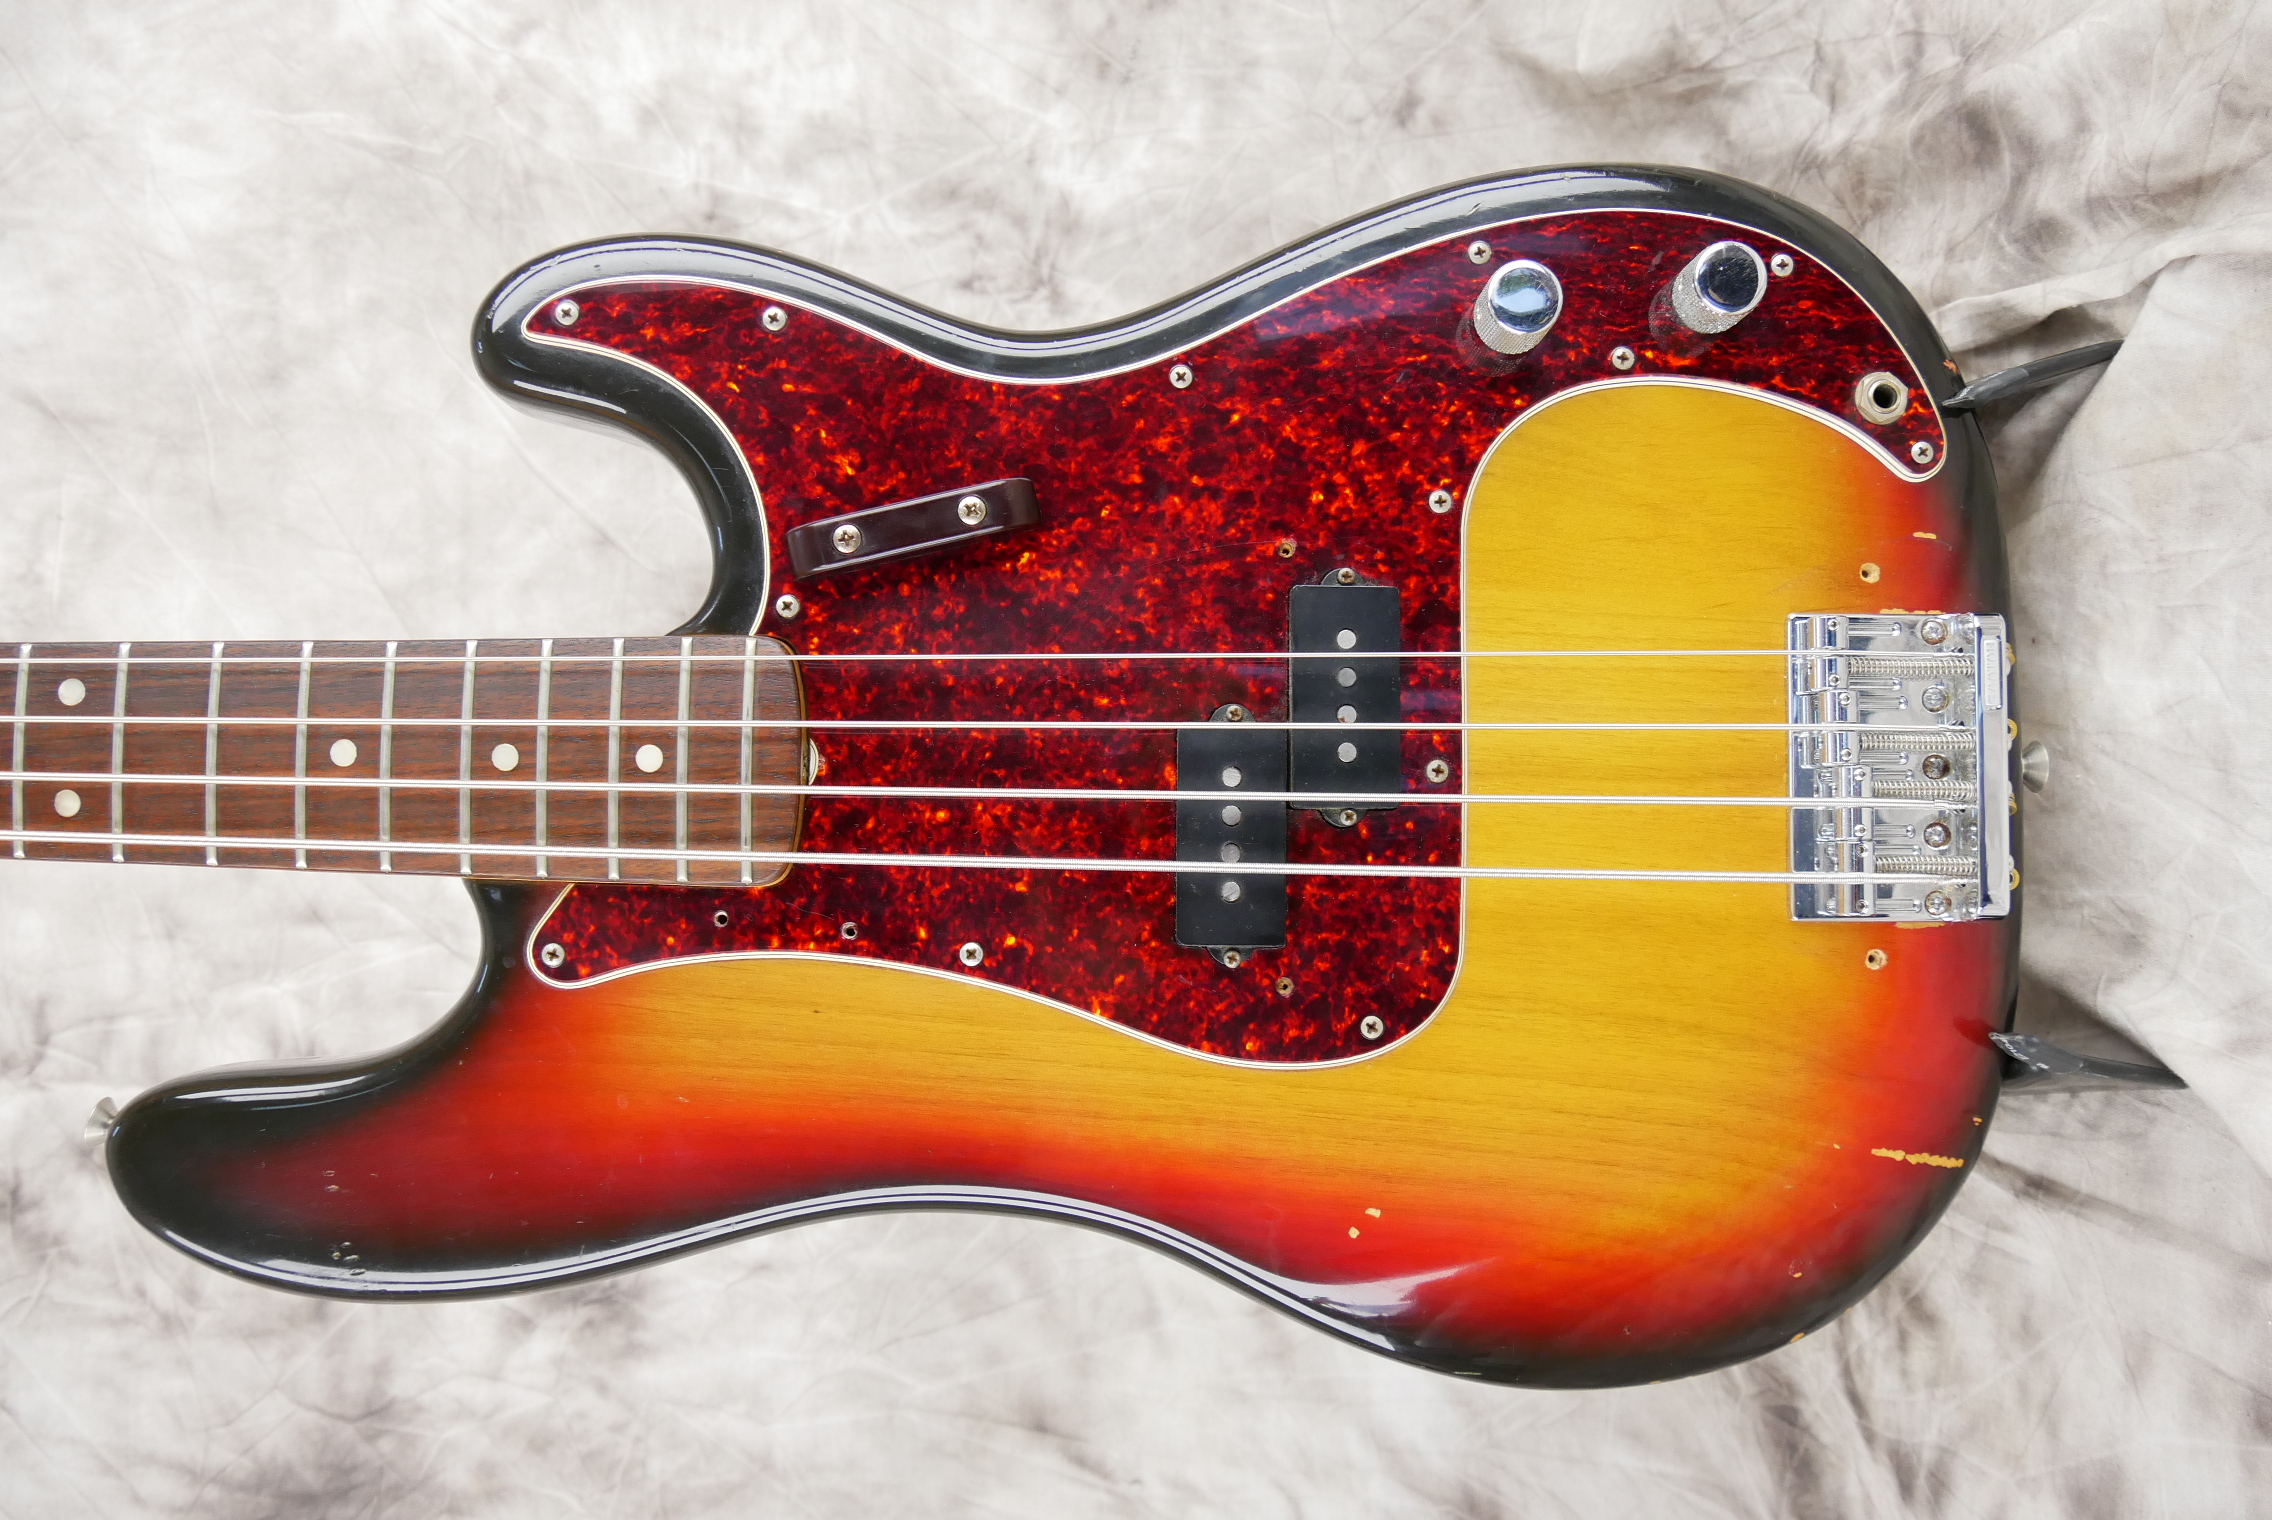 Fender-Precision-Bass-1973-sunburst-003.JPG